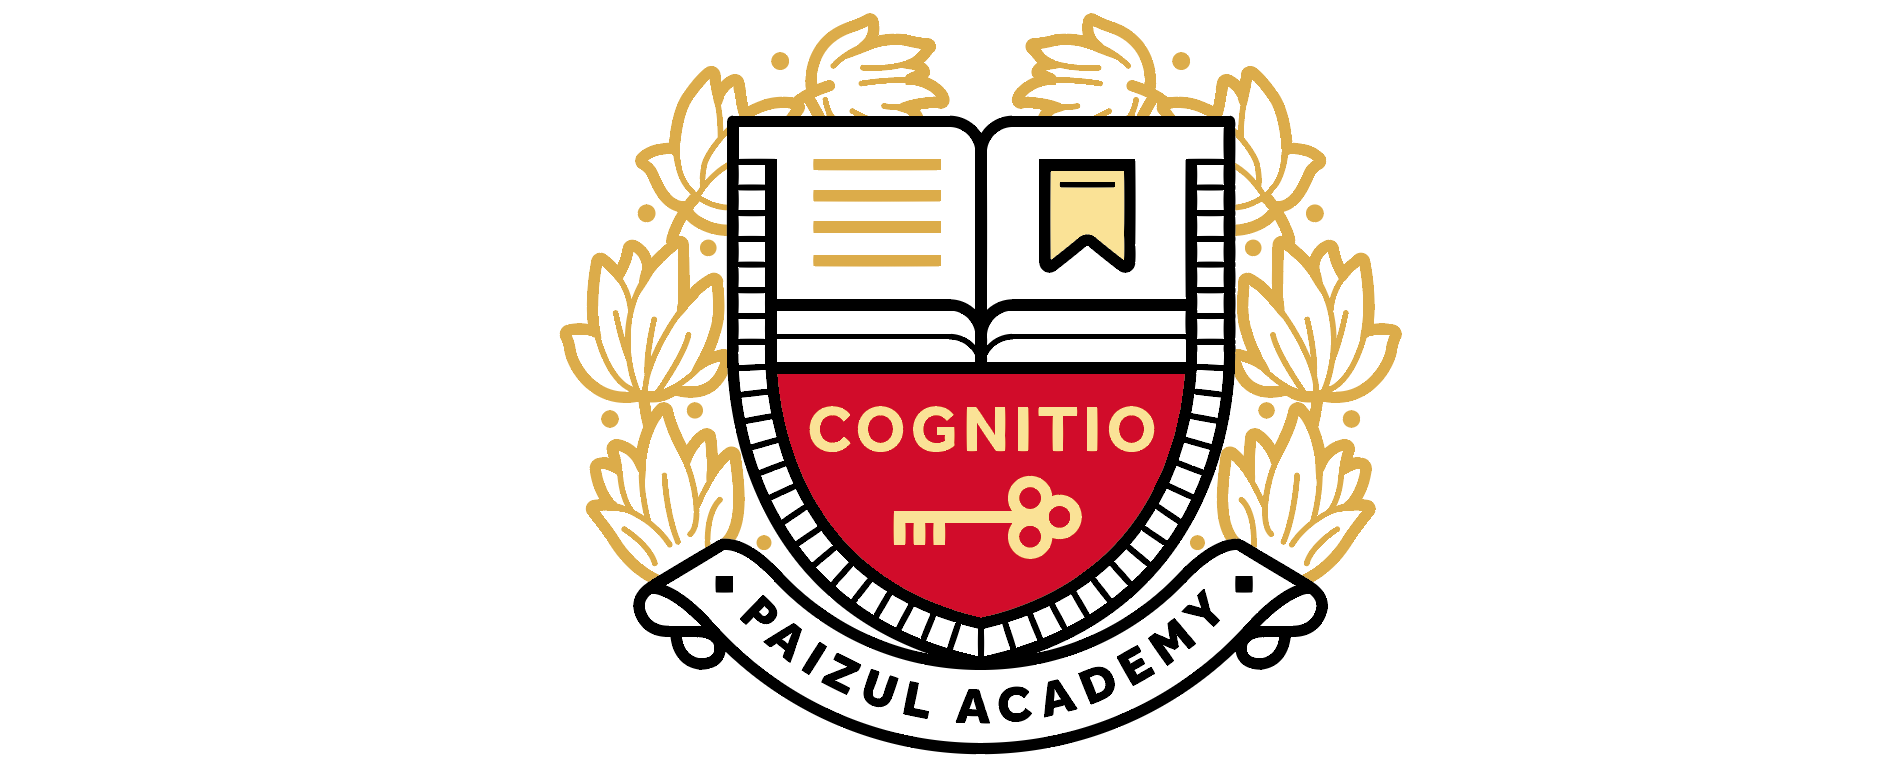 Paizul Academy